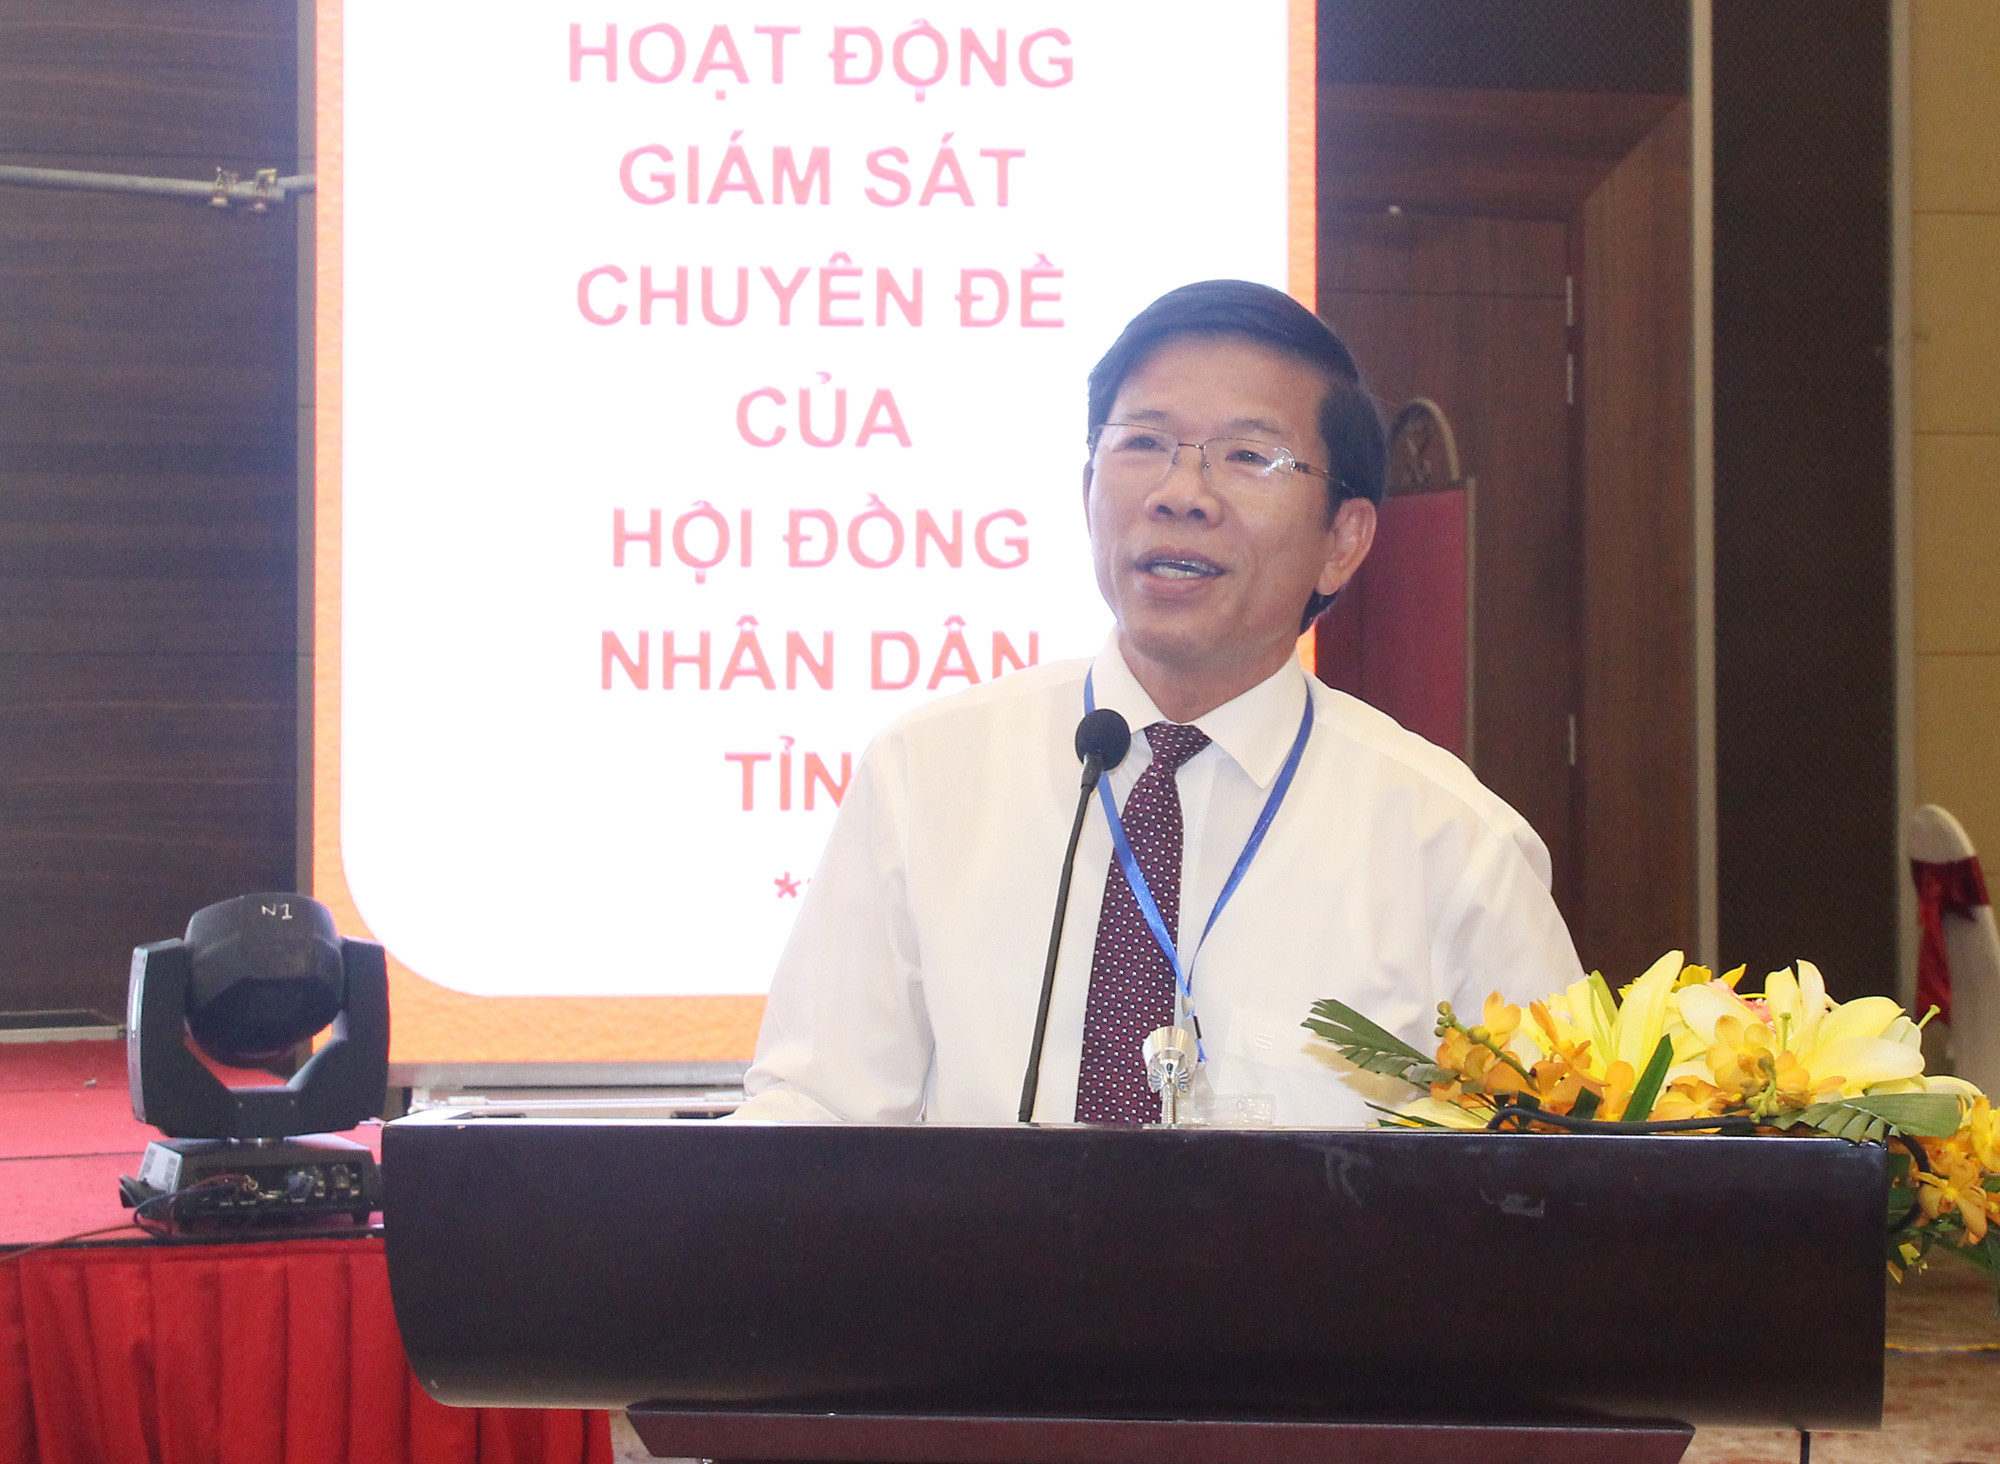 Đại diện Thường trực HĐND tỉnh Thừa Thiên Huế trao đổi kinh nghiệm tổ chức giám sát chuyên đề tại địa phương. Ảnh: Mai Hoa